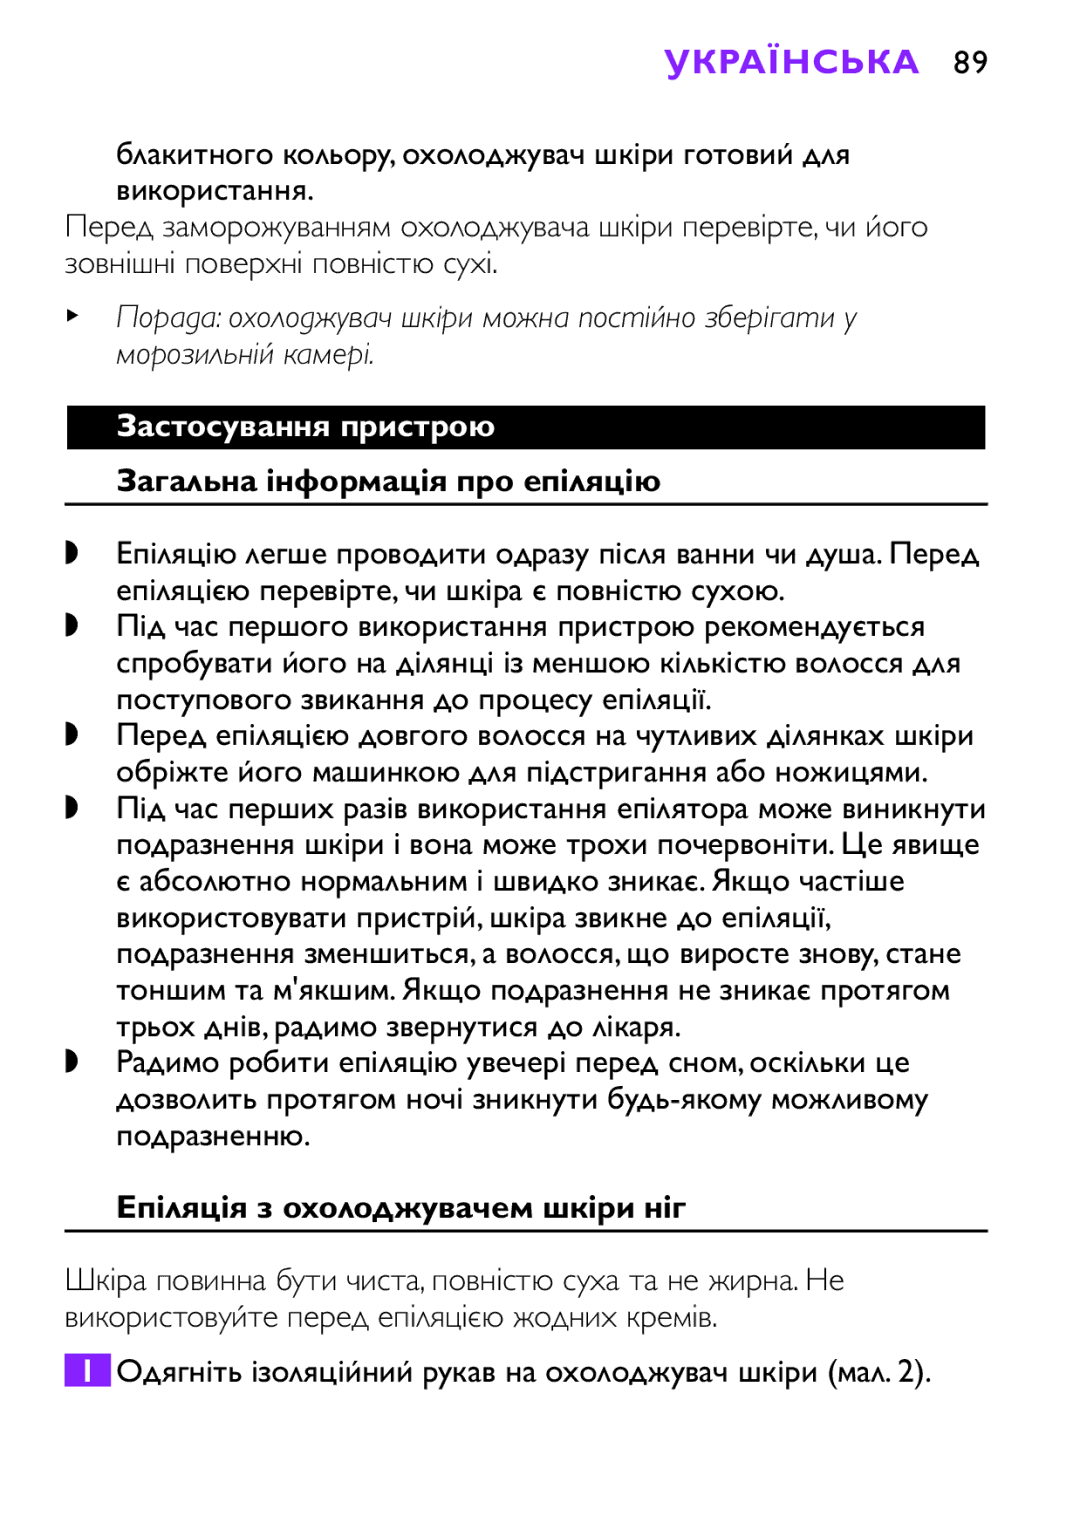 Philips HP6493 Українська, Застосування пристрою, Загальна інформація про епіляцію, Епіляція з охолоджувачем шкіри ніг 